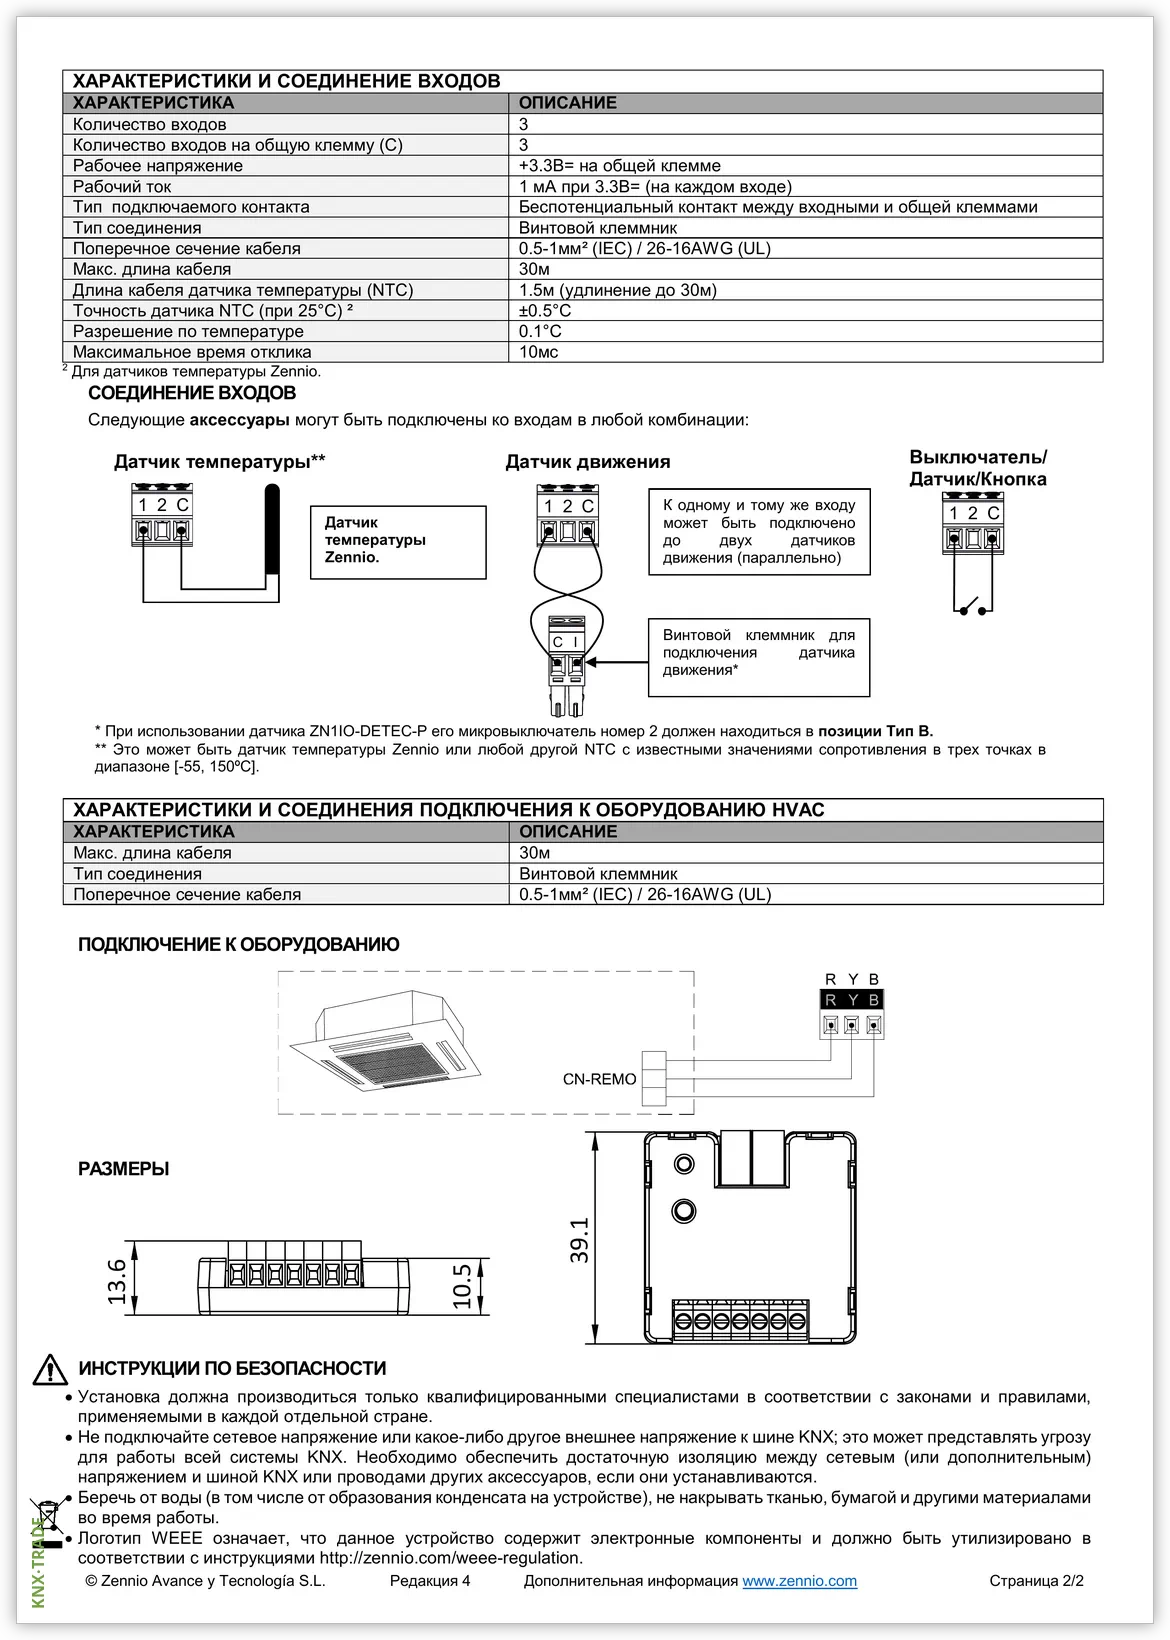 Datasheet (2) Zennio [ZCL-LG1] KLIC-LG1 / Шлюз KNX для управления кондиционерами LG